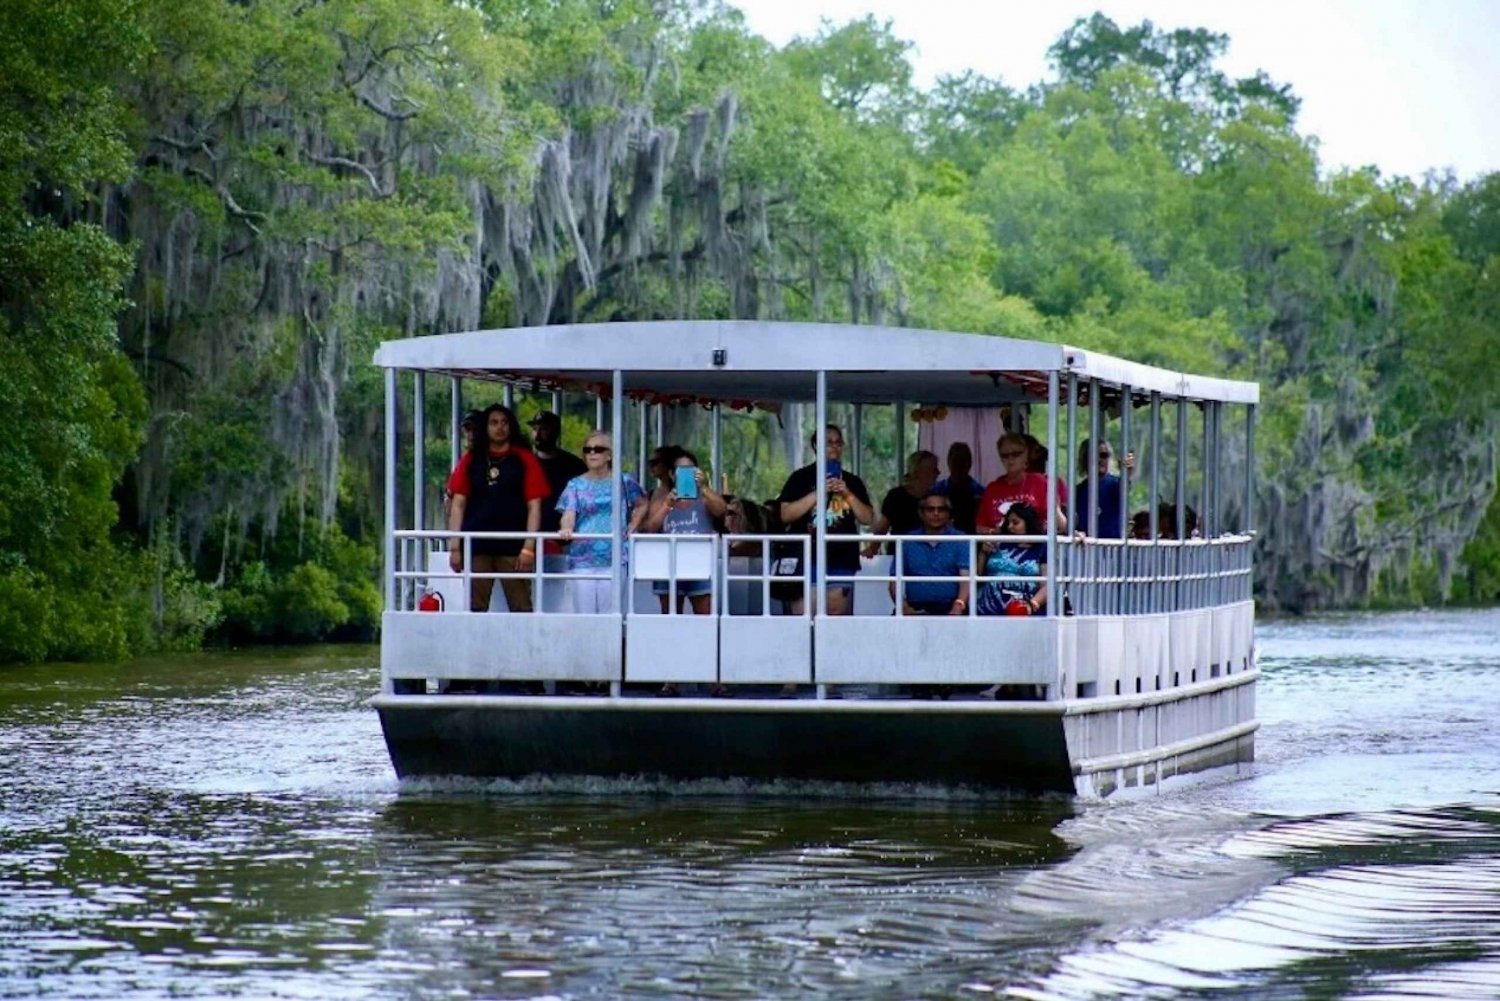 New Orleans: moerastocht op overdekte pontonboot